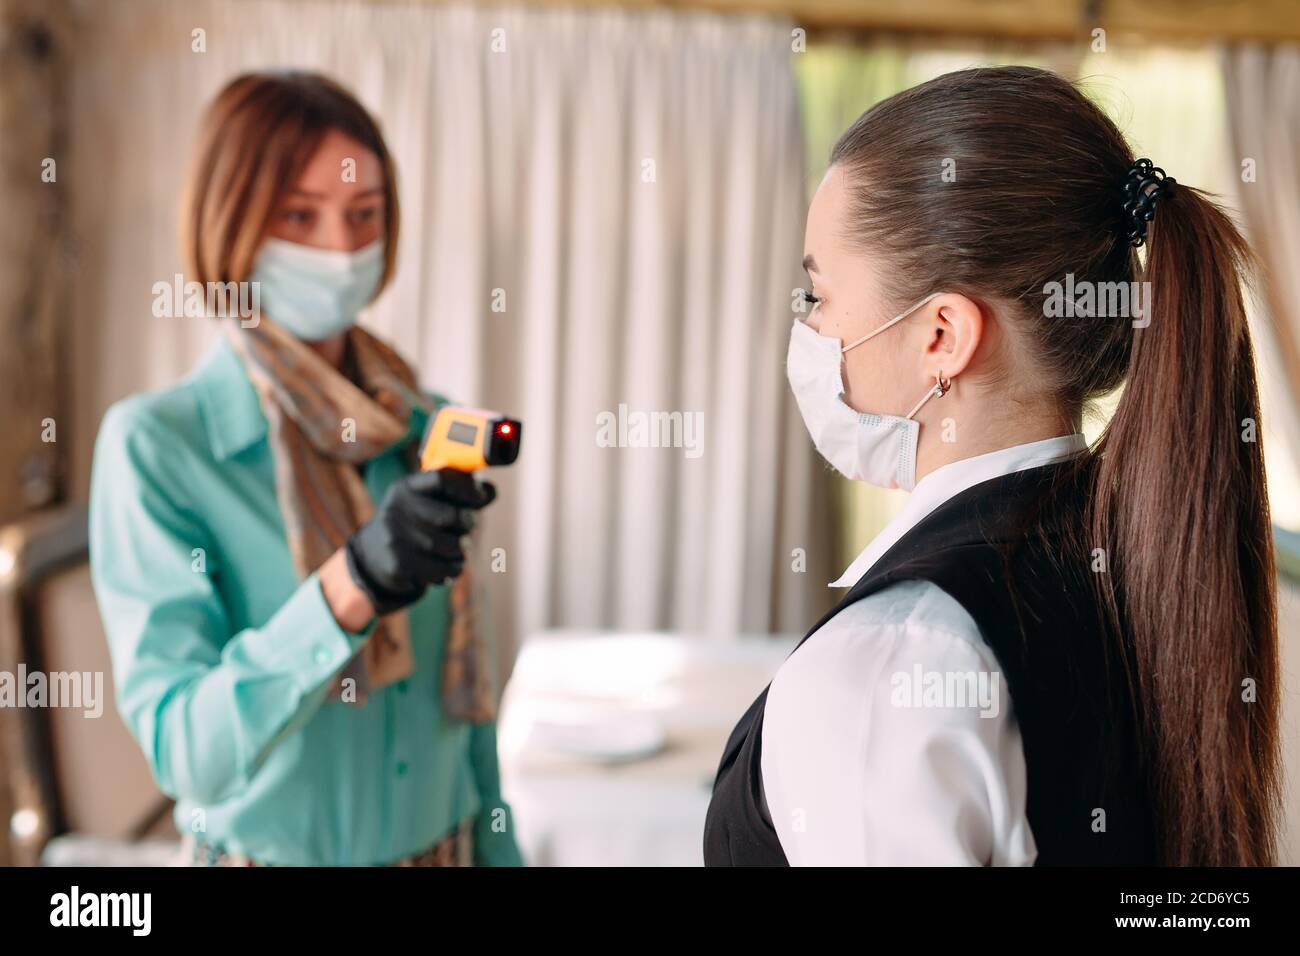 Der Manager eines Restaurants oder Hotels überprüft die Körpertemperatur des Personals mit einem Wärmebildgerät. Stockfoto